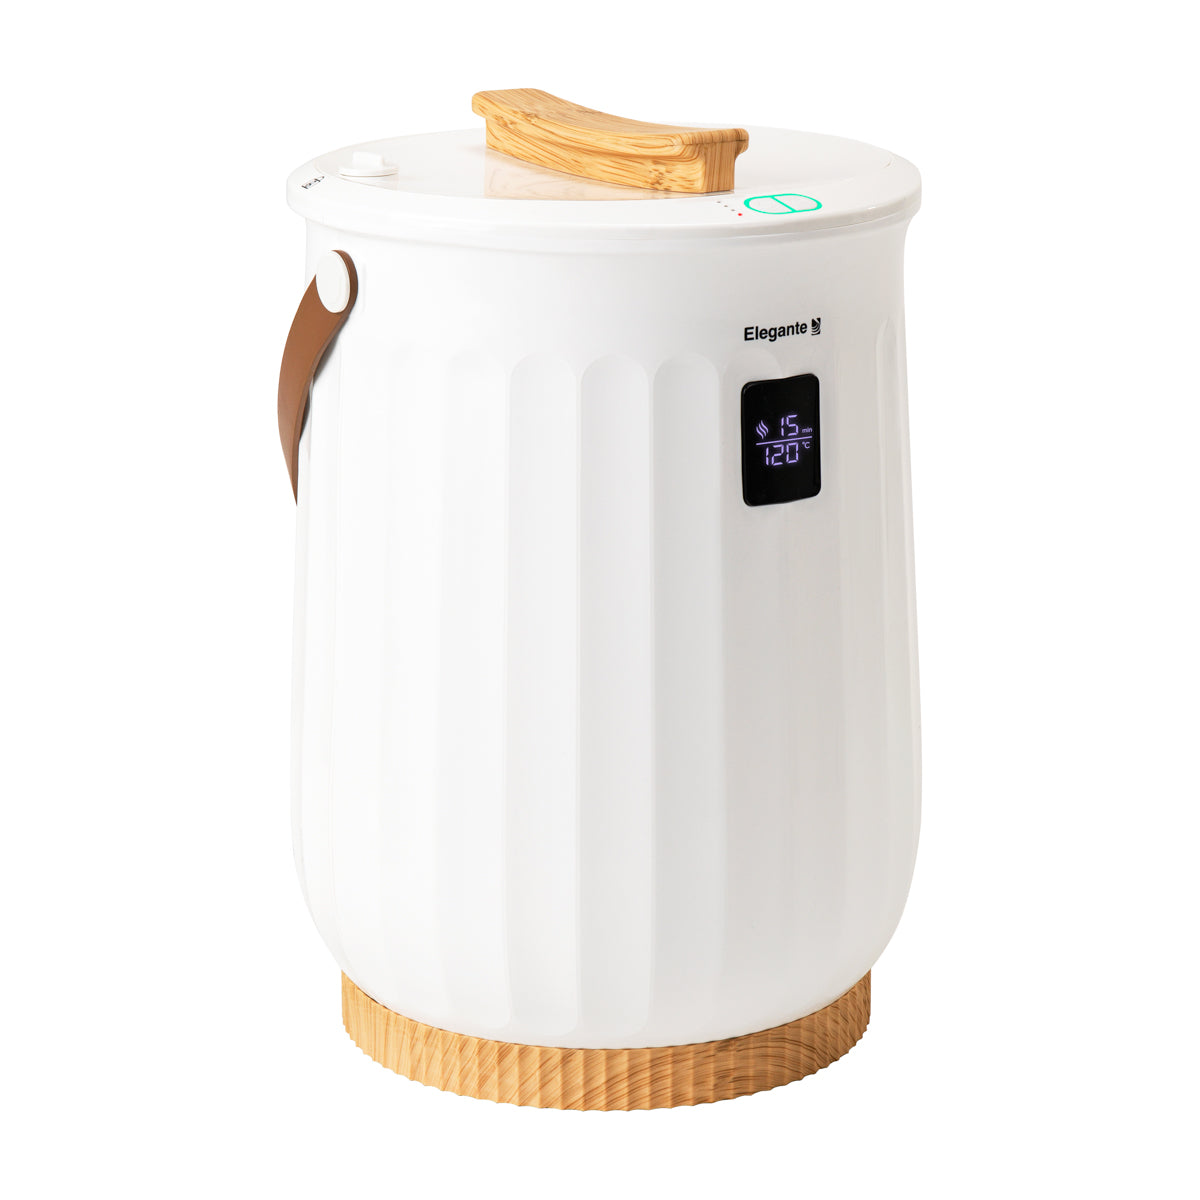 ELEGANTE handdoekverwarmer E18 480W